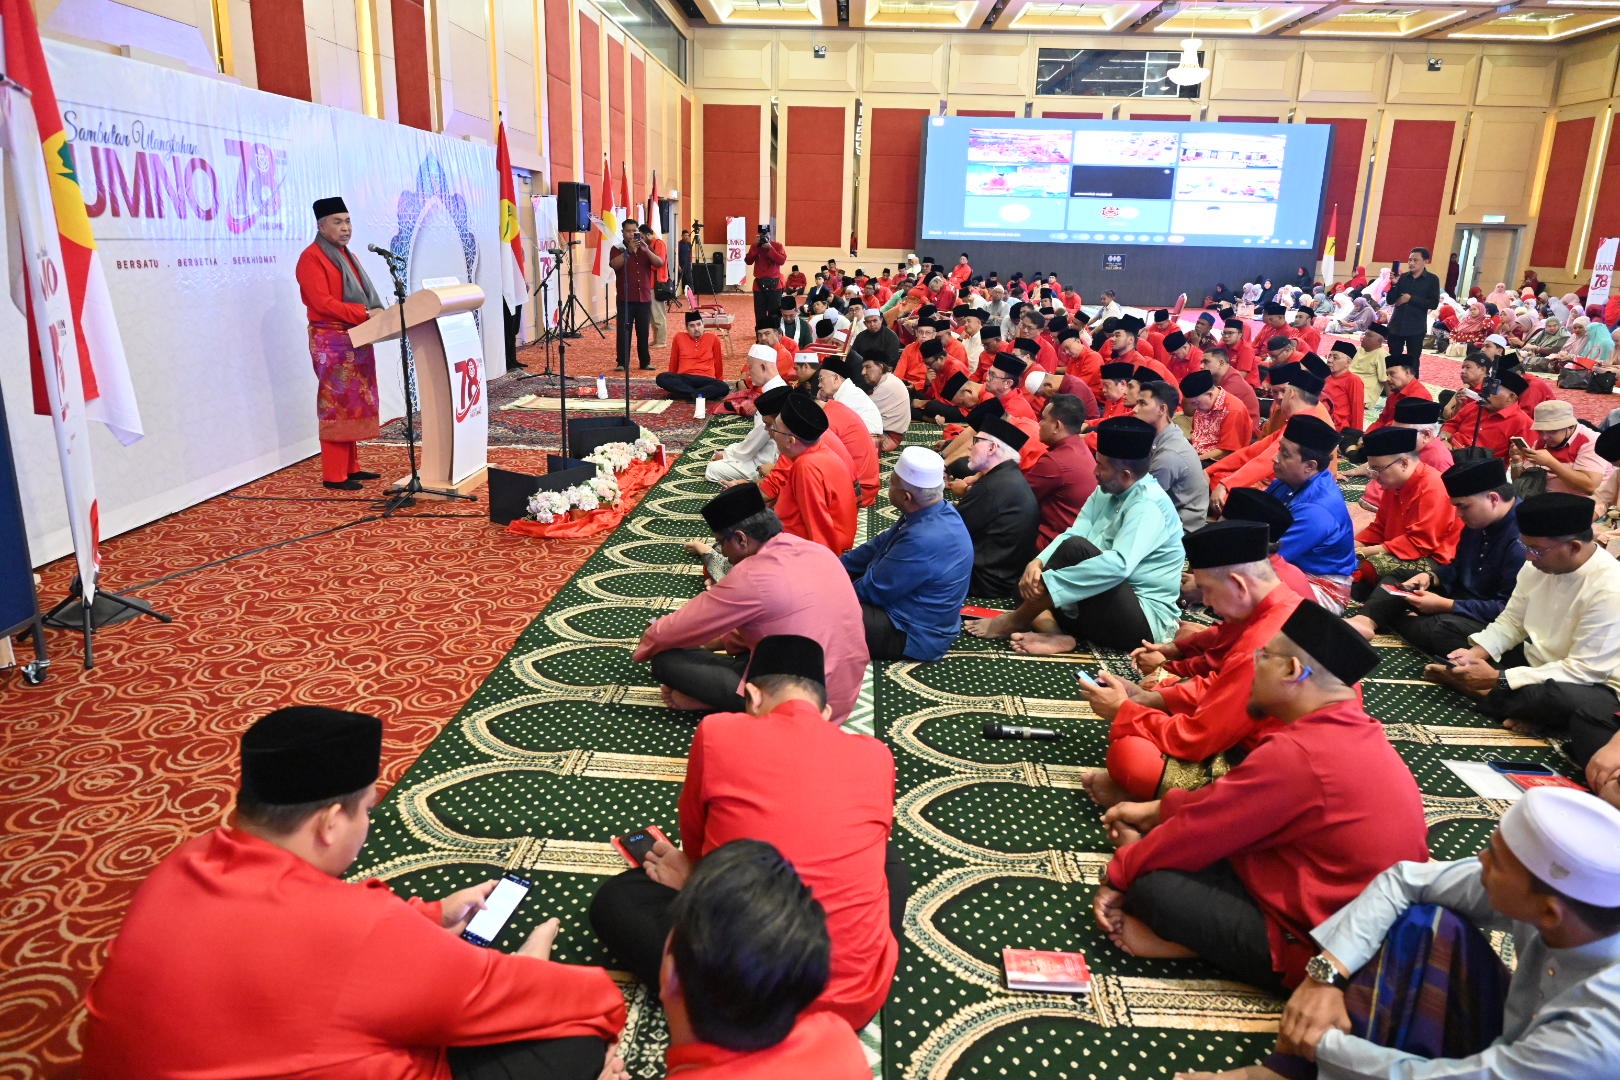 Sambutan Ulang Tahun UMNO Ke-78 Serentak Seluruh Negara, Terus Istiqamah Dalam Perjuangan